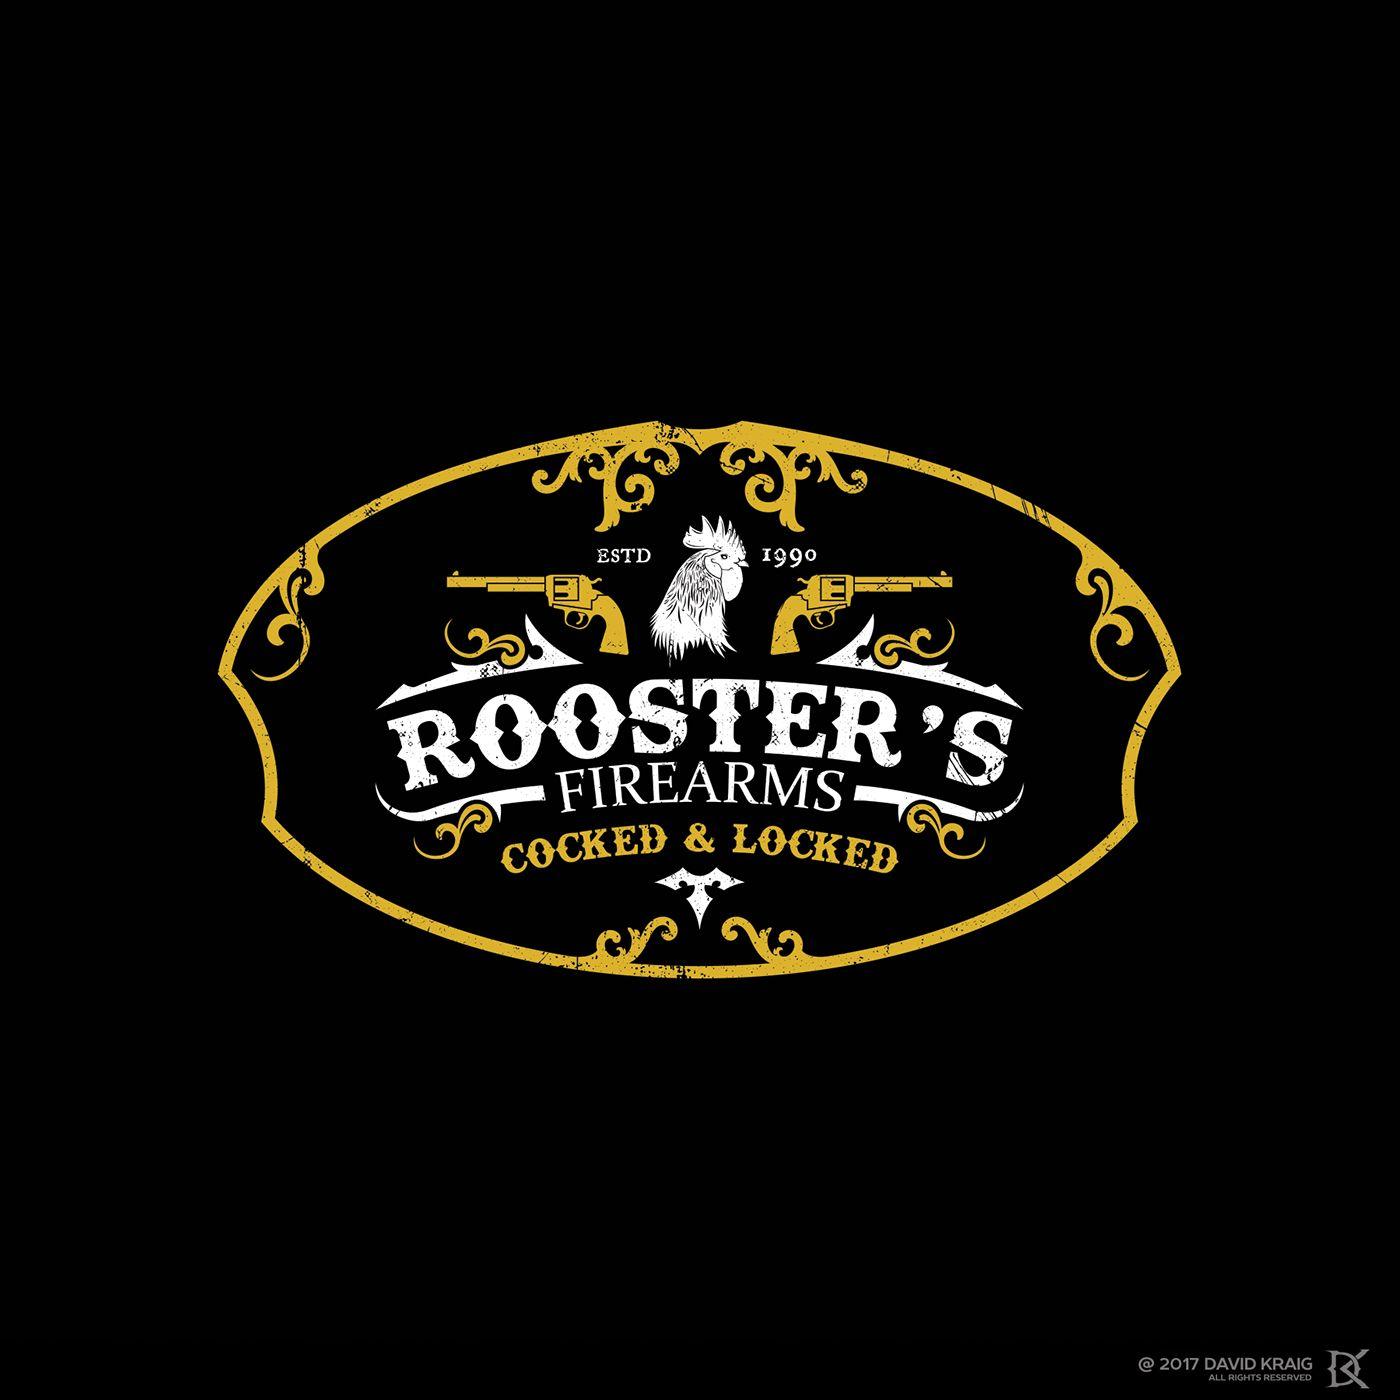 Firearms Logo - Rooster's Firearms logo on Behance